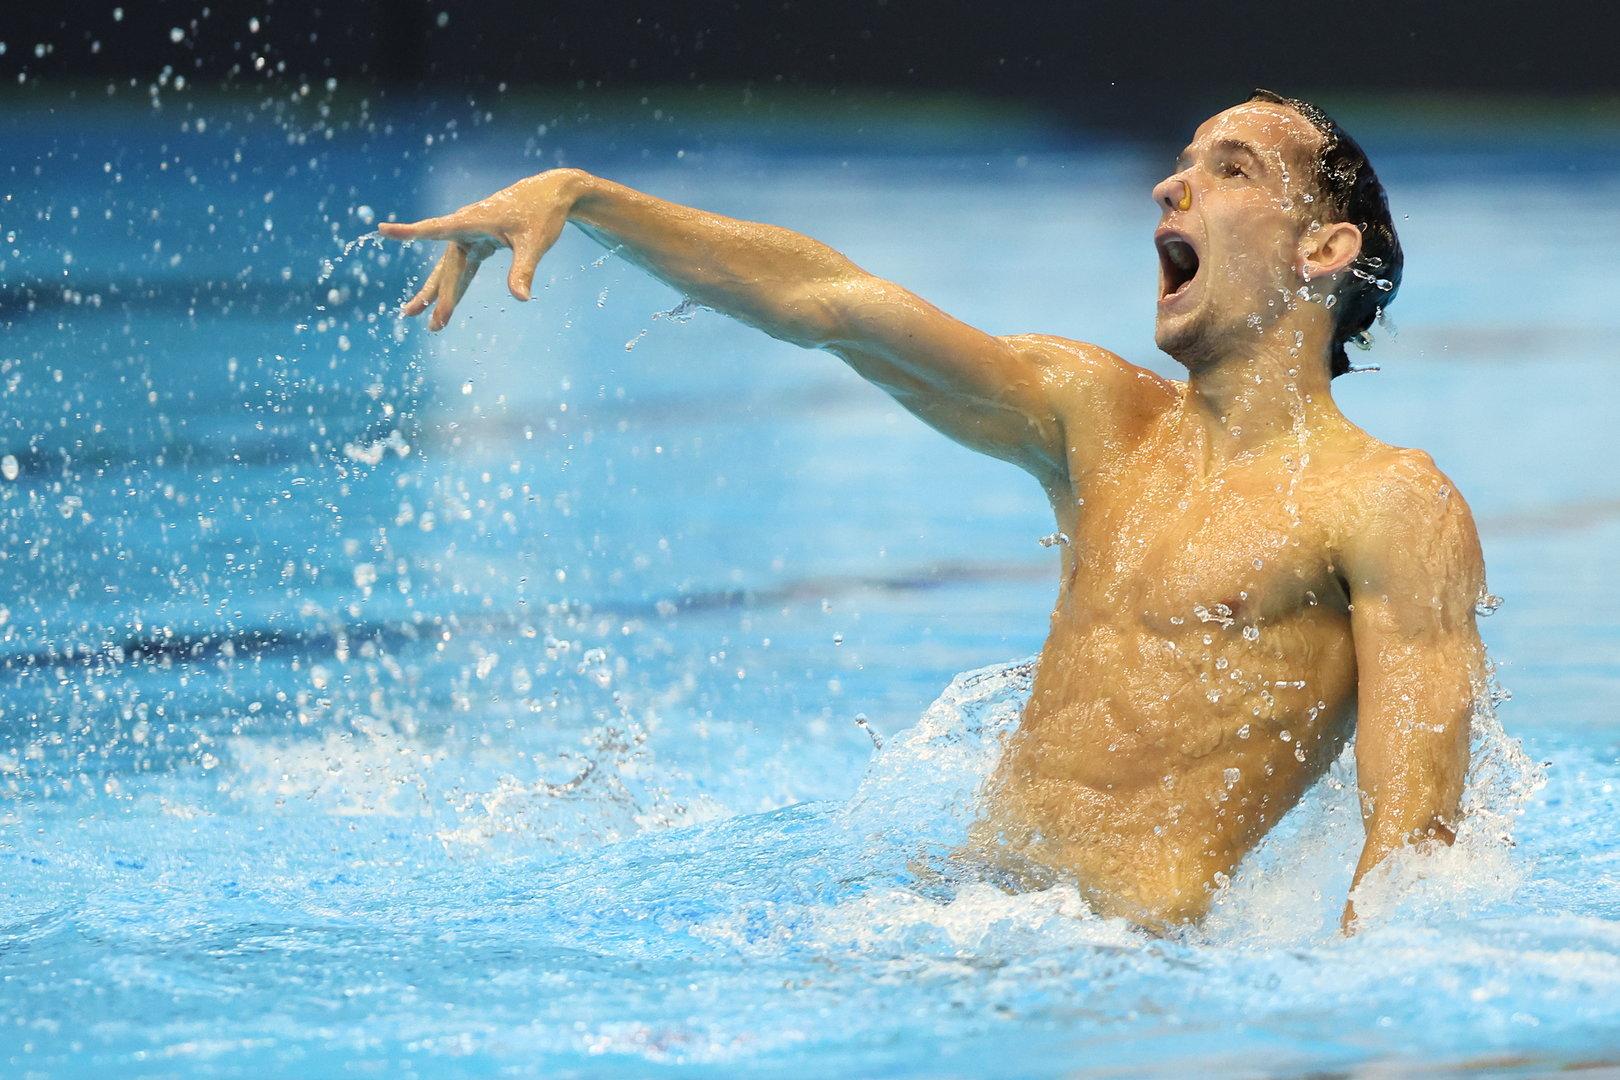 Das ist der erste männliche Weltmeister im Synchronschwimmen